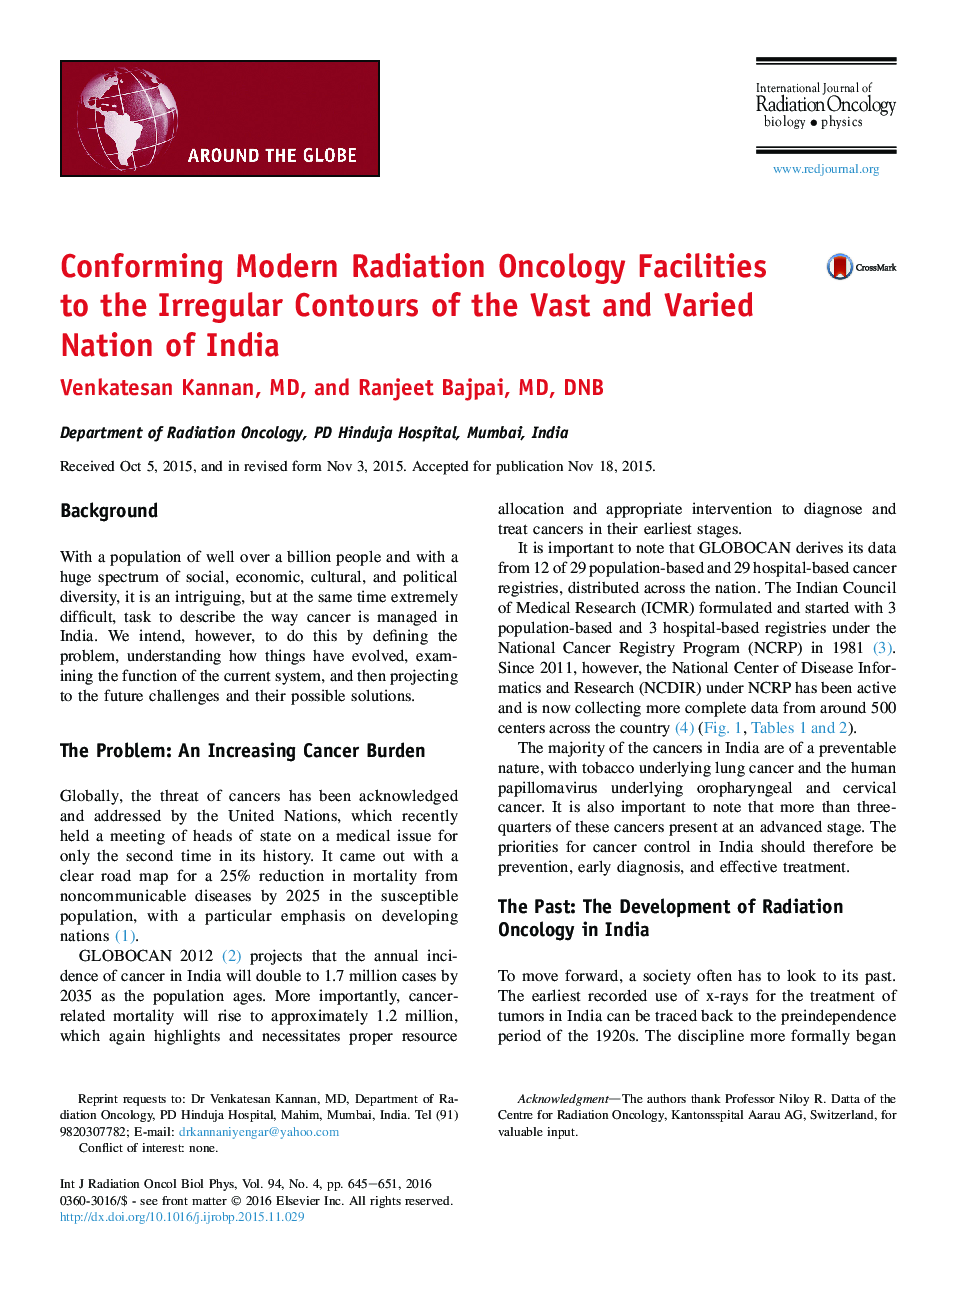 تطبیق امکانات پیشرفته ترویج رادیولوژی مدرن با استفاده از کانال های نامنظم کشور متنوع و متنوع هند 